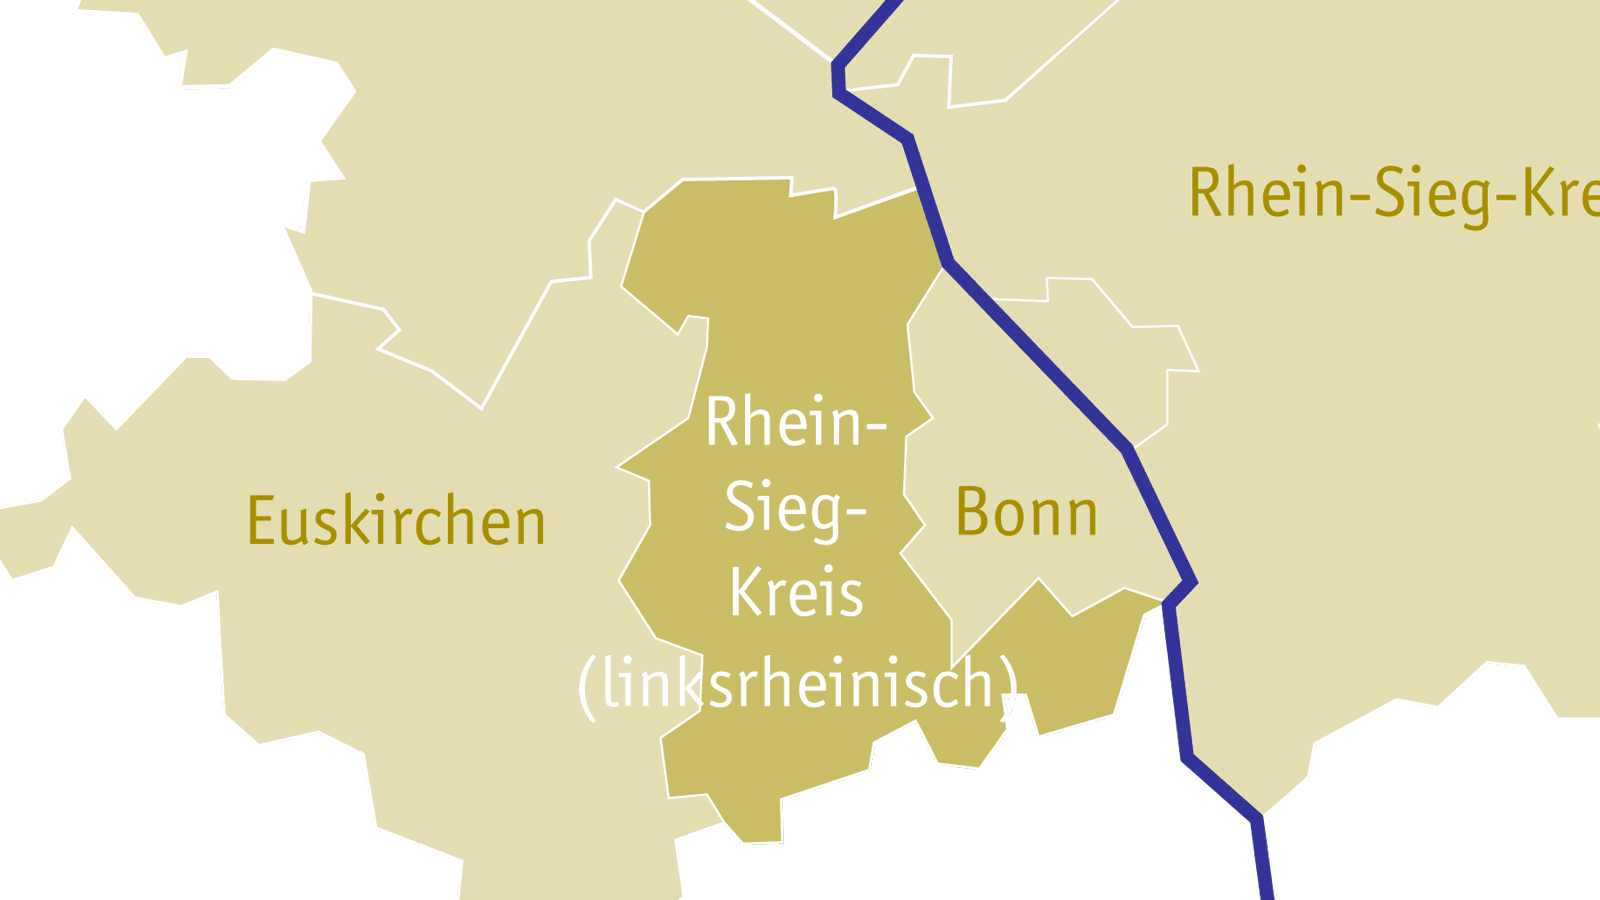 Kreisdekanat Rhein-Sieg-Kreis (linksrheinischer Teil)